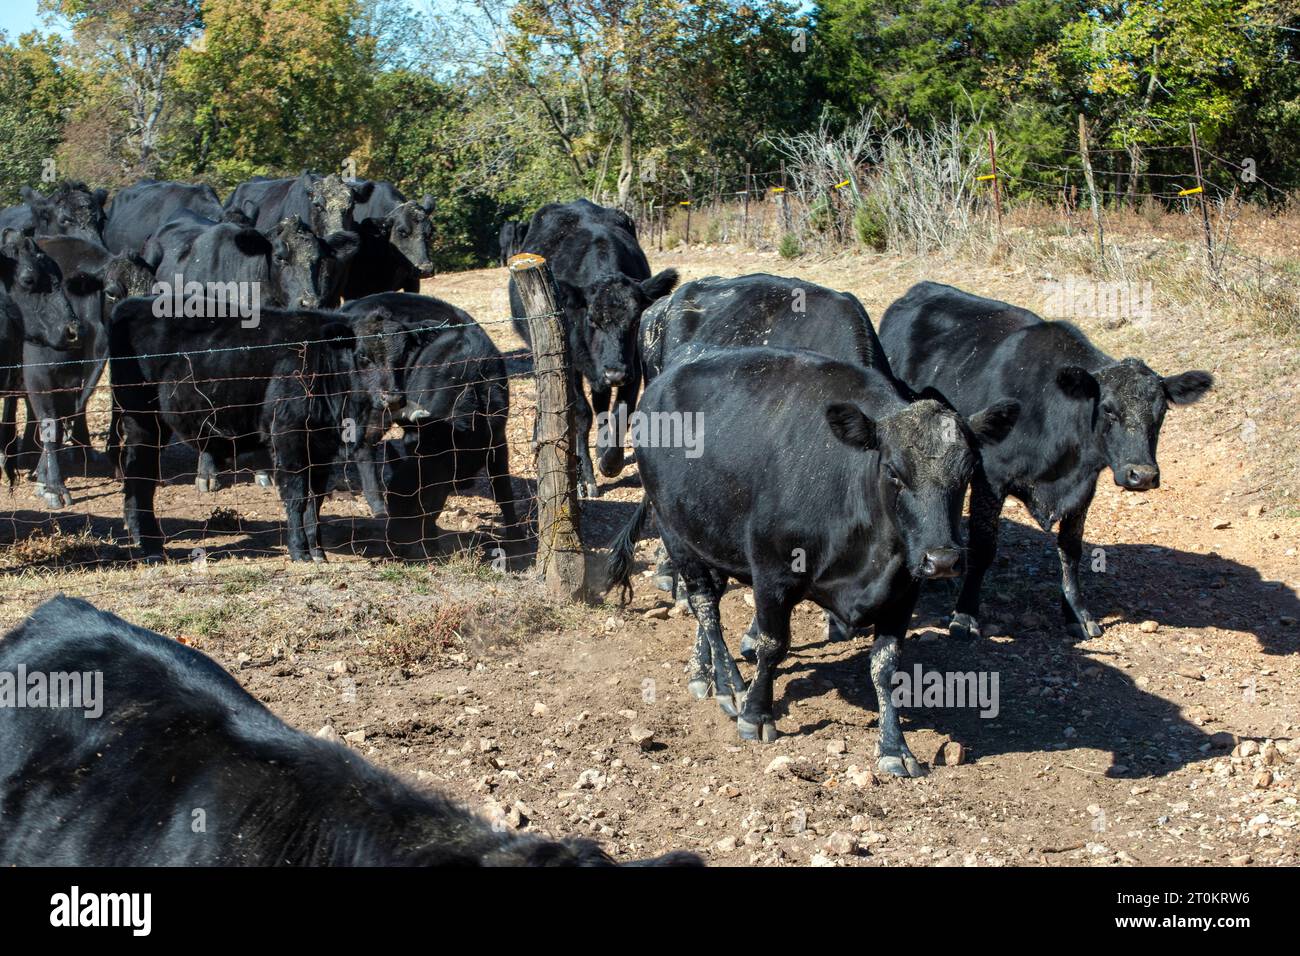 Las vacas de carne angus negra se dirigen pacíficamente a través de la puerta abierta en esta granja de Missouri. Foto de stock